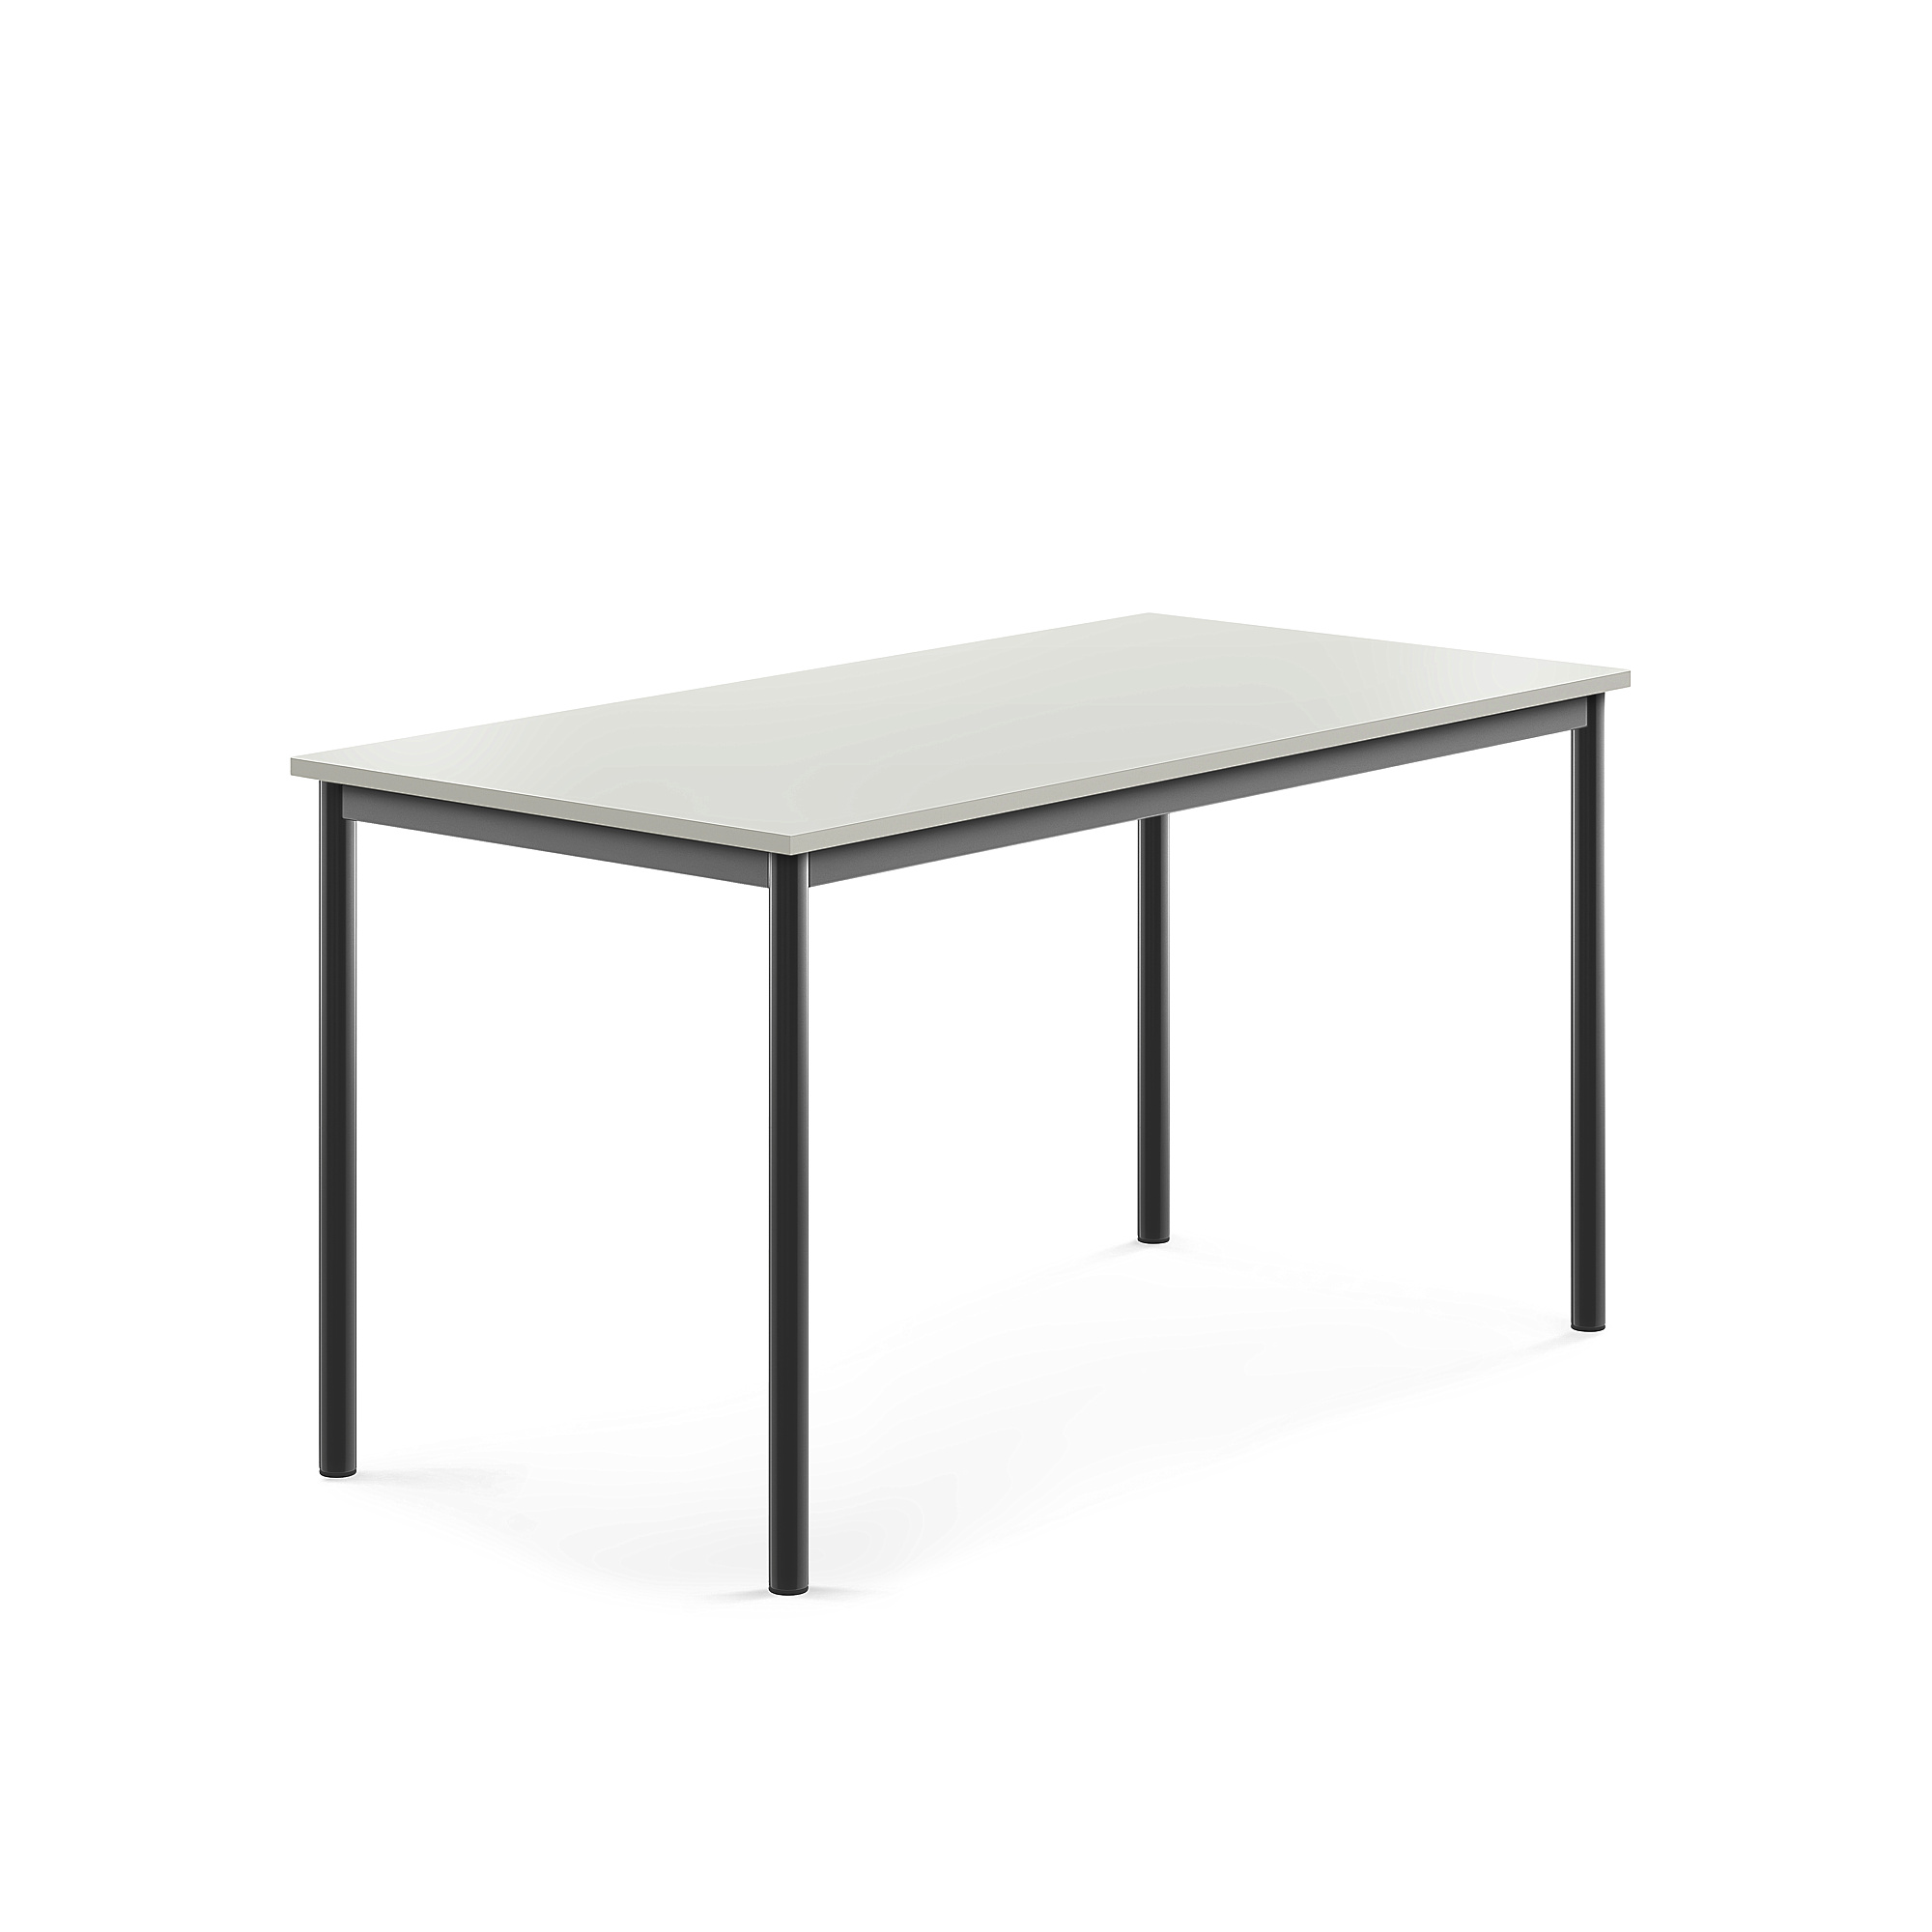 Stůl BORÅS, 1400x700x720 mm, antracitově šedé nohy, HPL deska, šedá